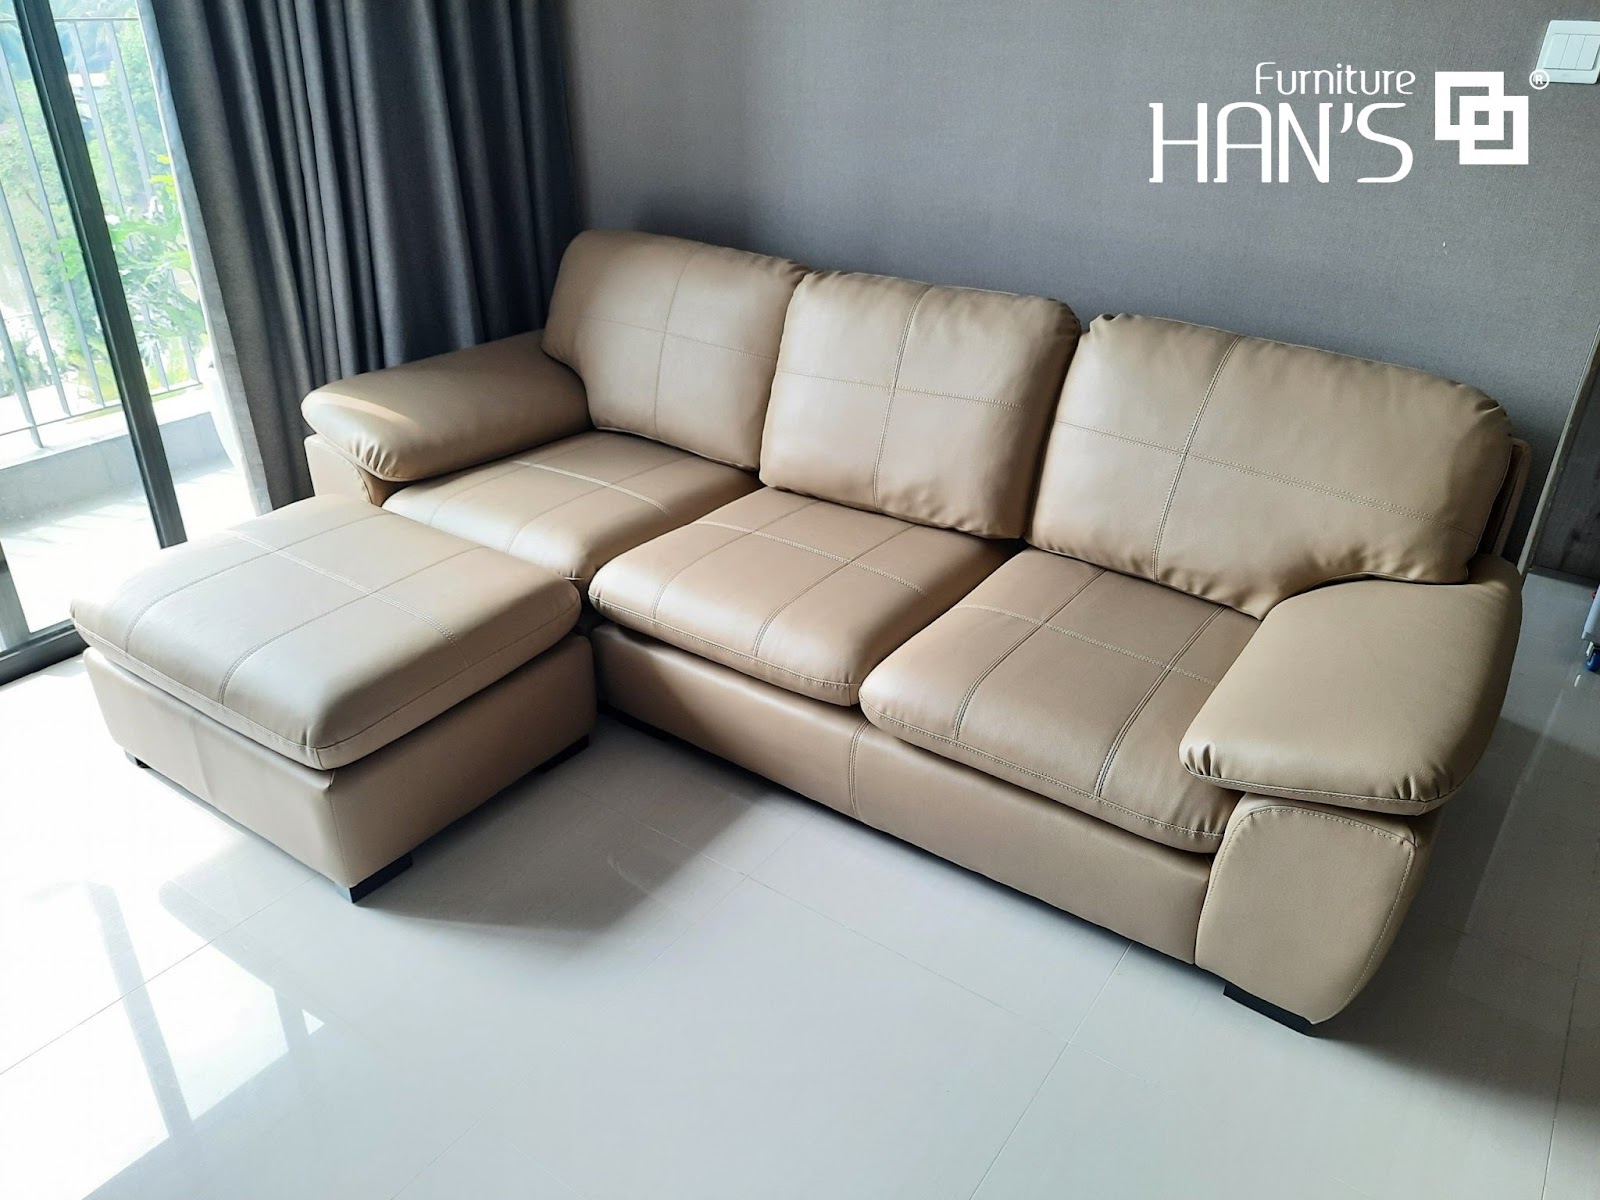 “Bật mí” những cách vệ sinh ghế sofa tại nhà hiệu quả